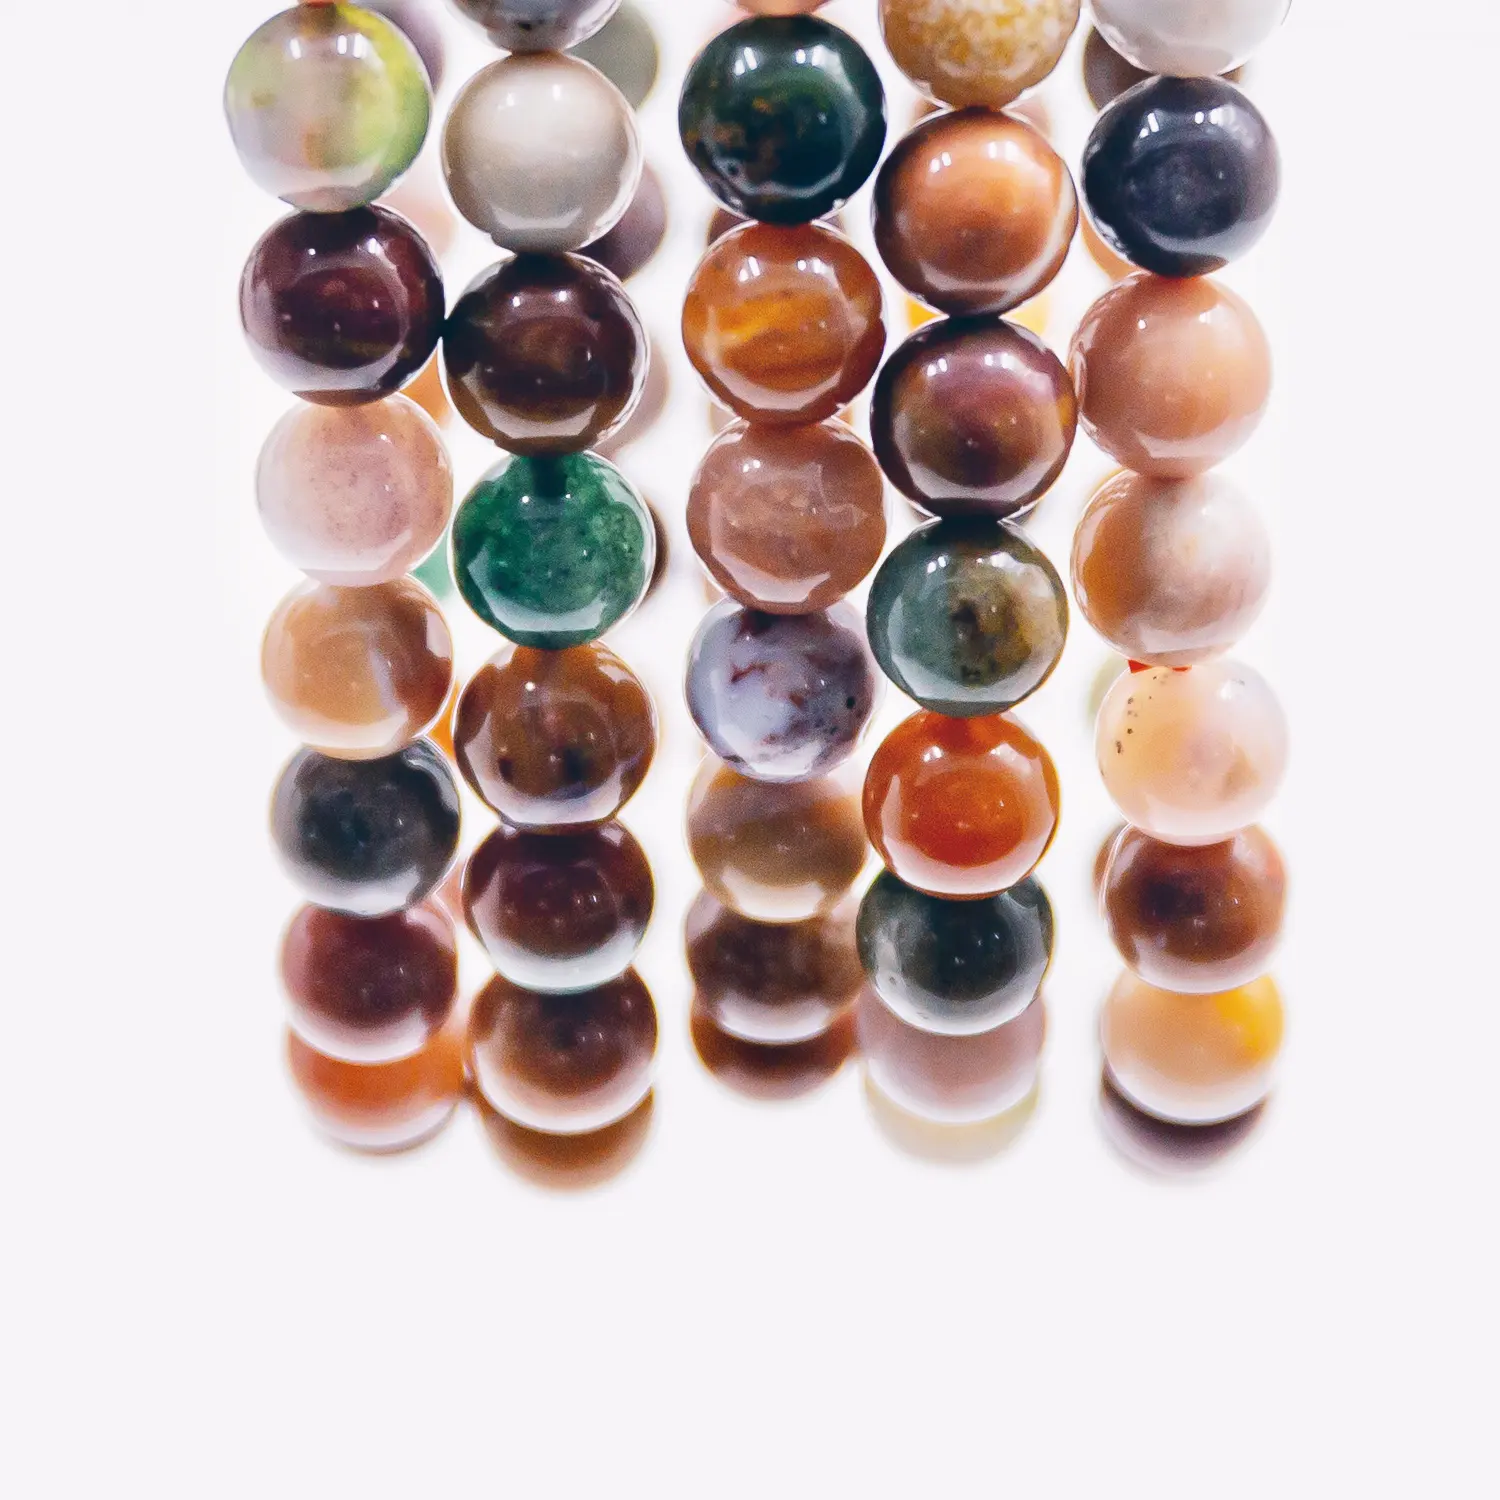 Di alta qualità naturale della pietra preziosa ocean jasper chakra guarigione di fascini di cristallo braccialetto per la vendita